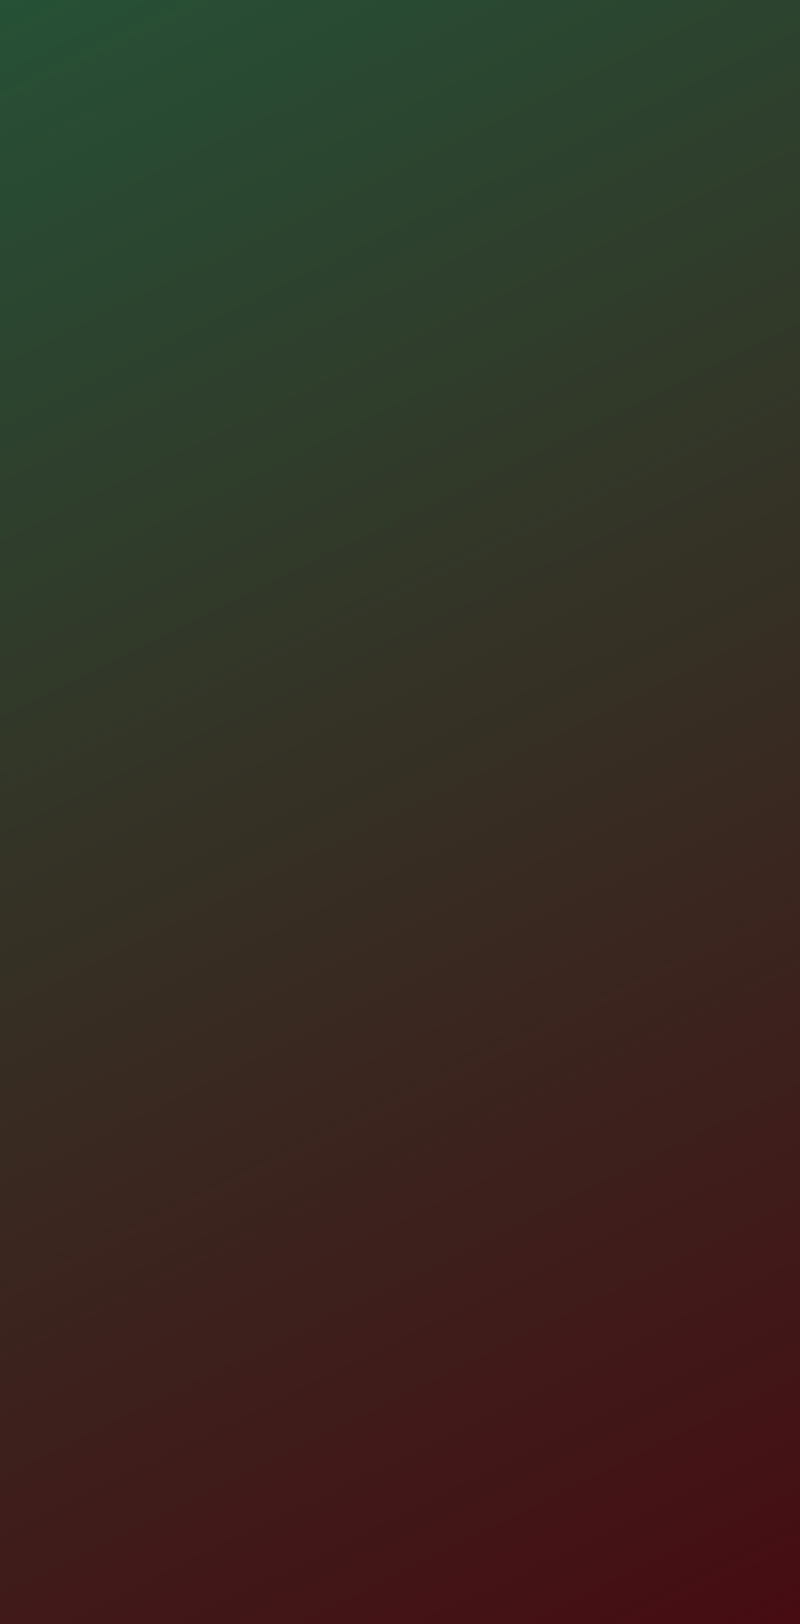 Dark Sisters, color, colur, gradient, green, pattern, red, road, HD phone  wallpaper | Peakpx